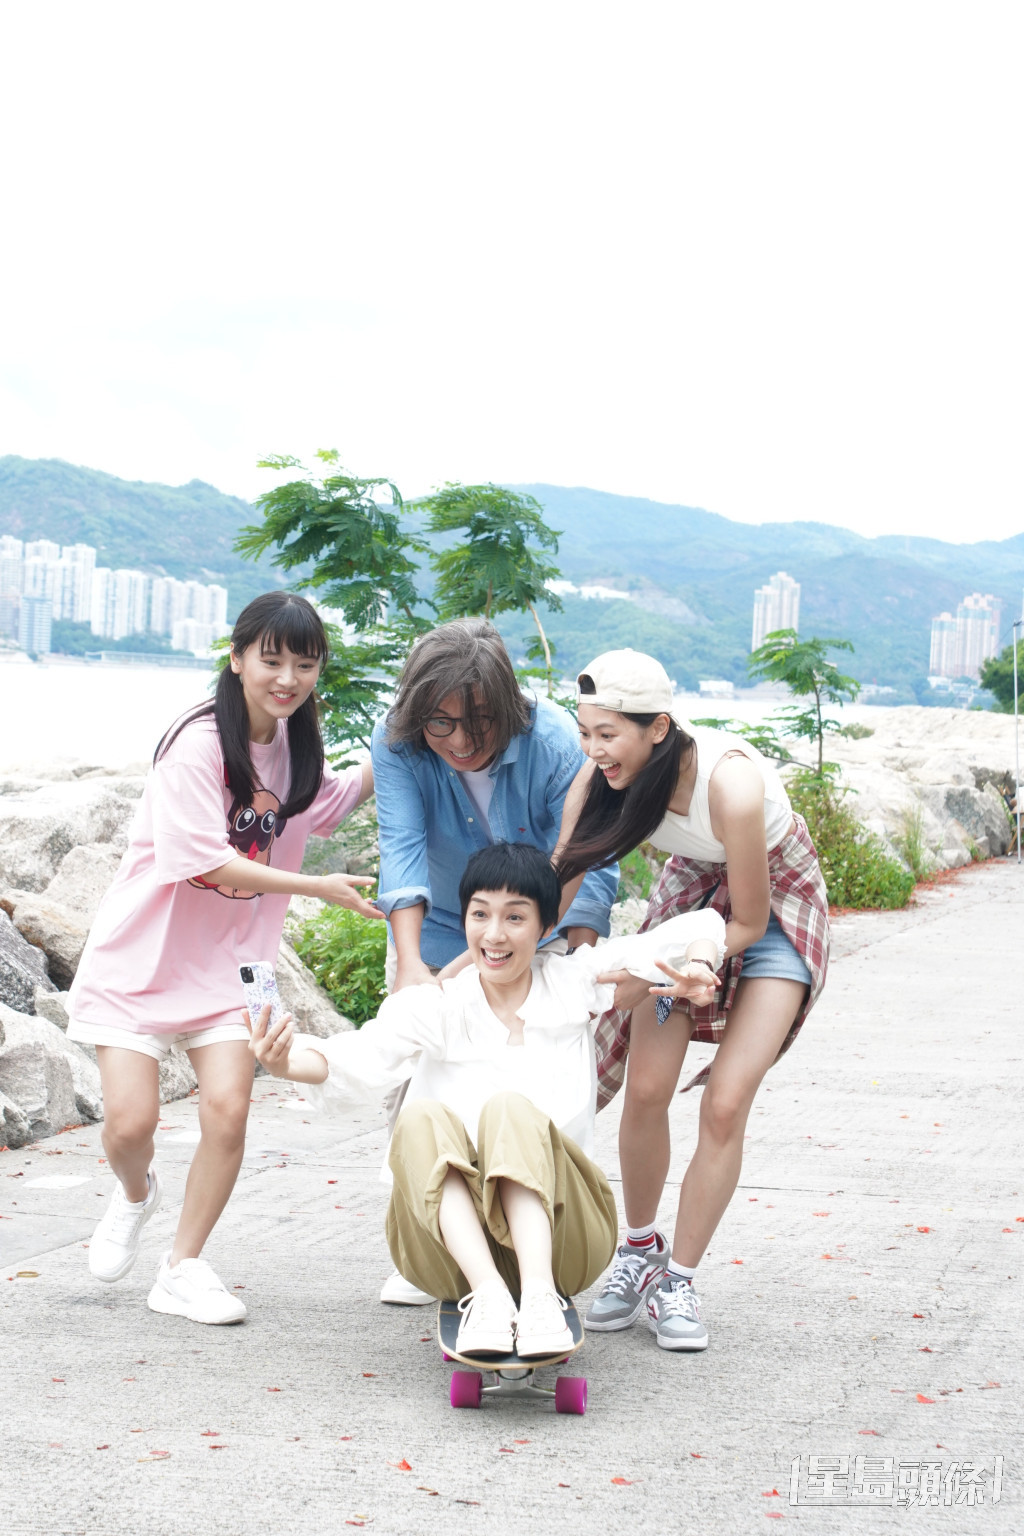 郭柏妍在《下流上车族》饰演林敏骢和江美仪大女“芊芊”。